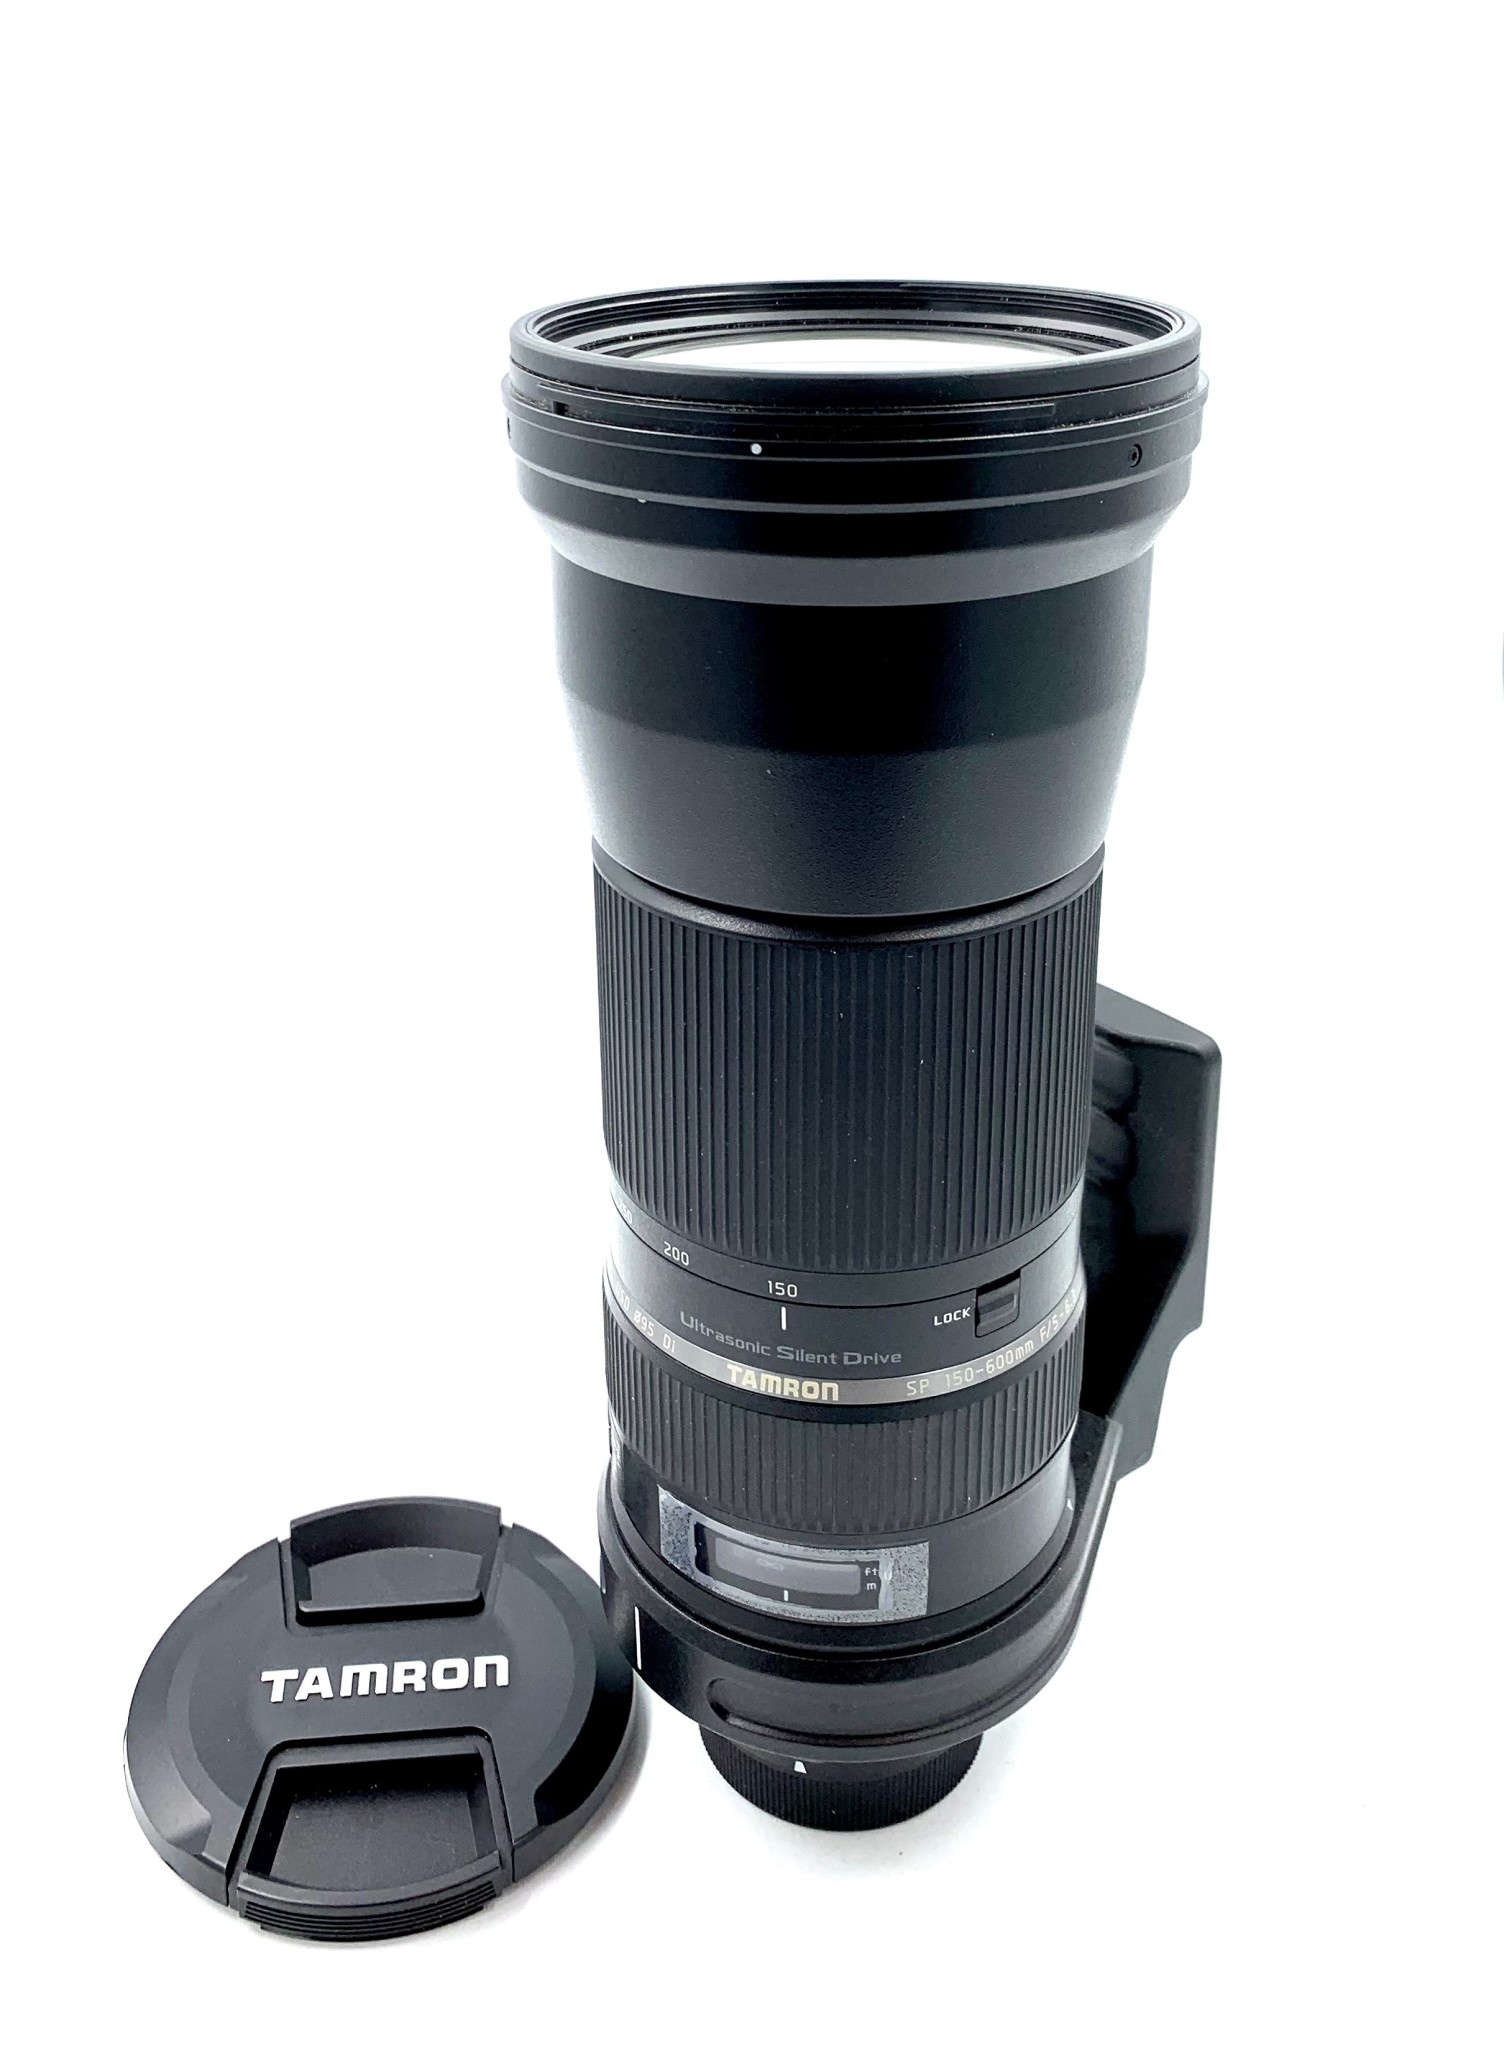 値引きする 【ほぼ新品】タムロン SP150-600mm F/5-6.3 Di VC USD - カメラ